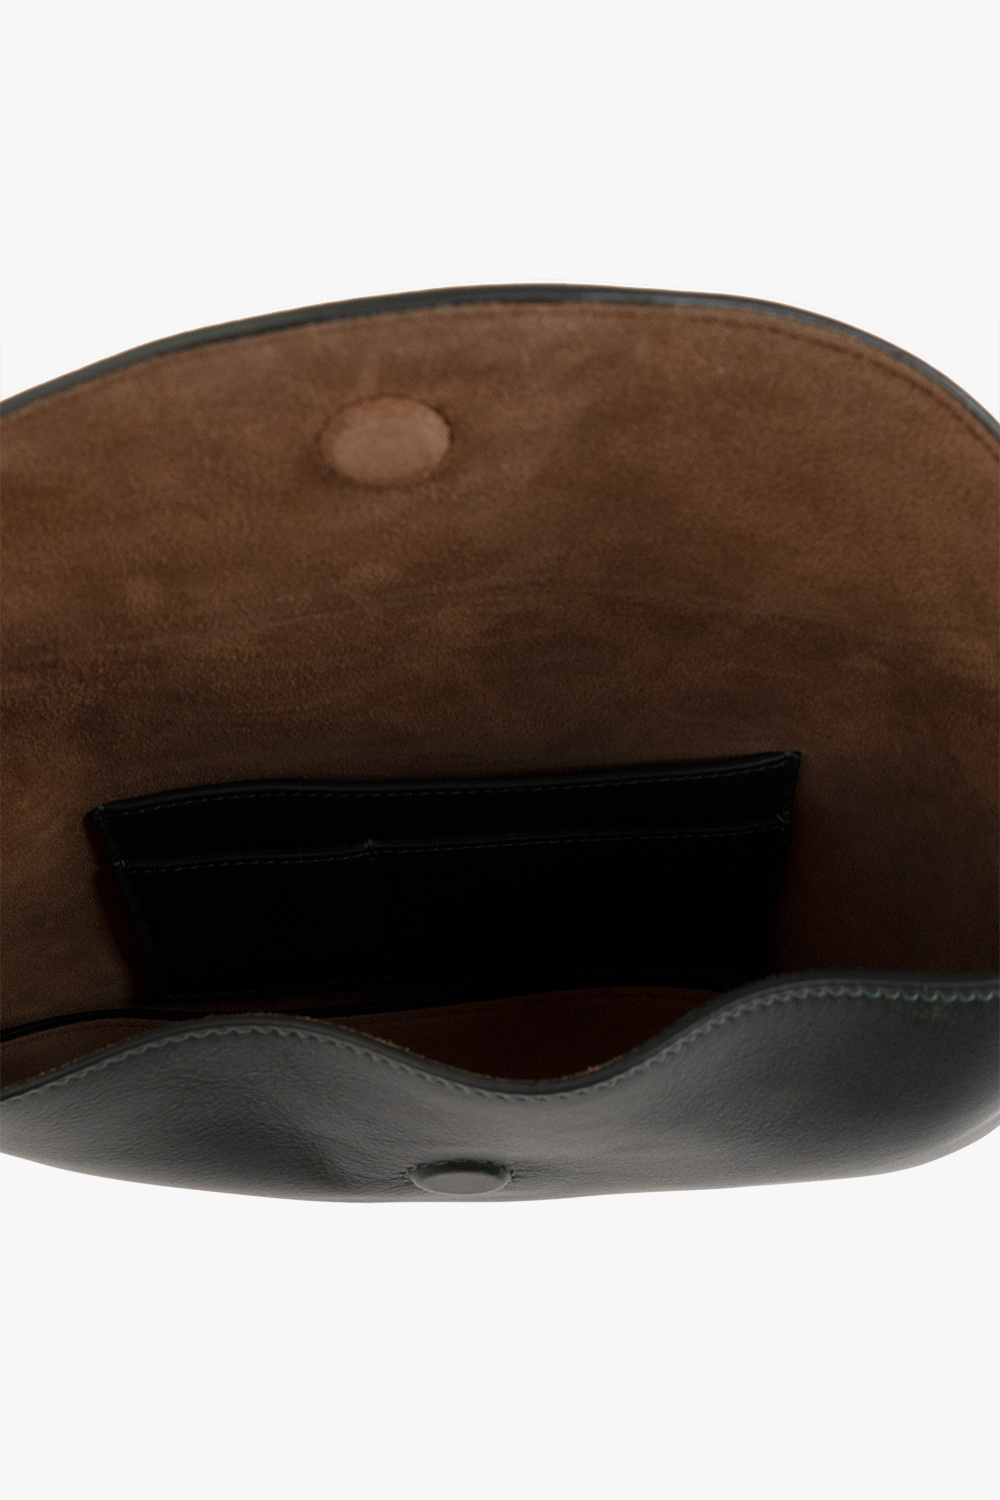 proenza label Schouler ‘Braid’ leather shoulder bag